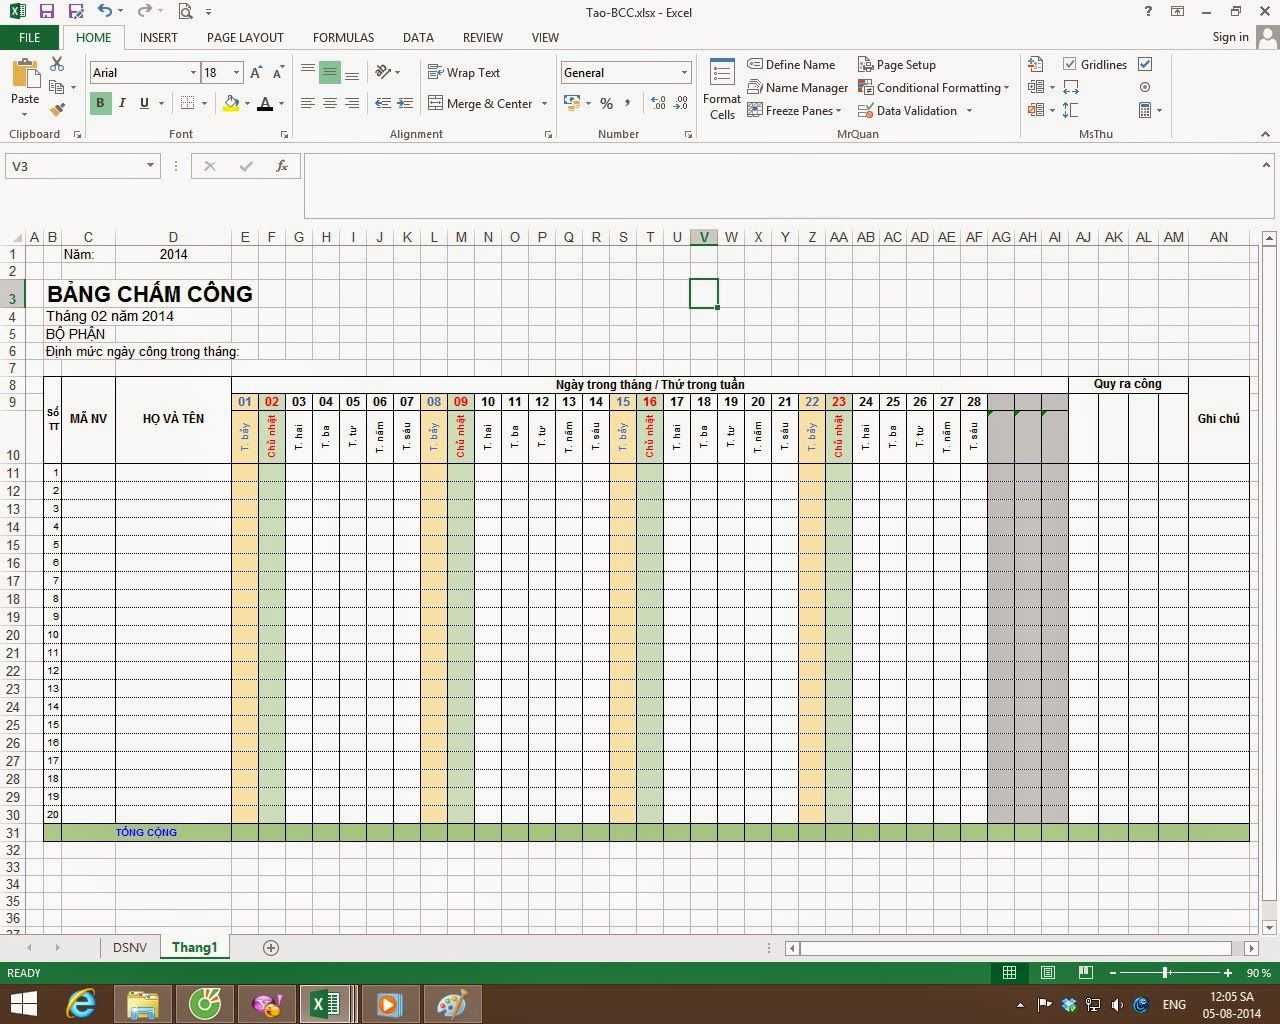 Cách tính bảng chấm công trong excel được thực hiện như thế nào? Hướng dẫn cách tạo bảng chấm công trên Excel chi tiết nhất 46